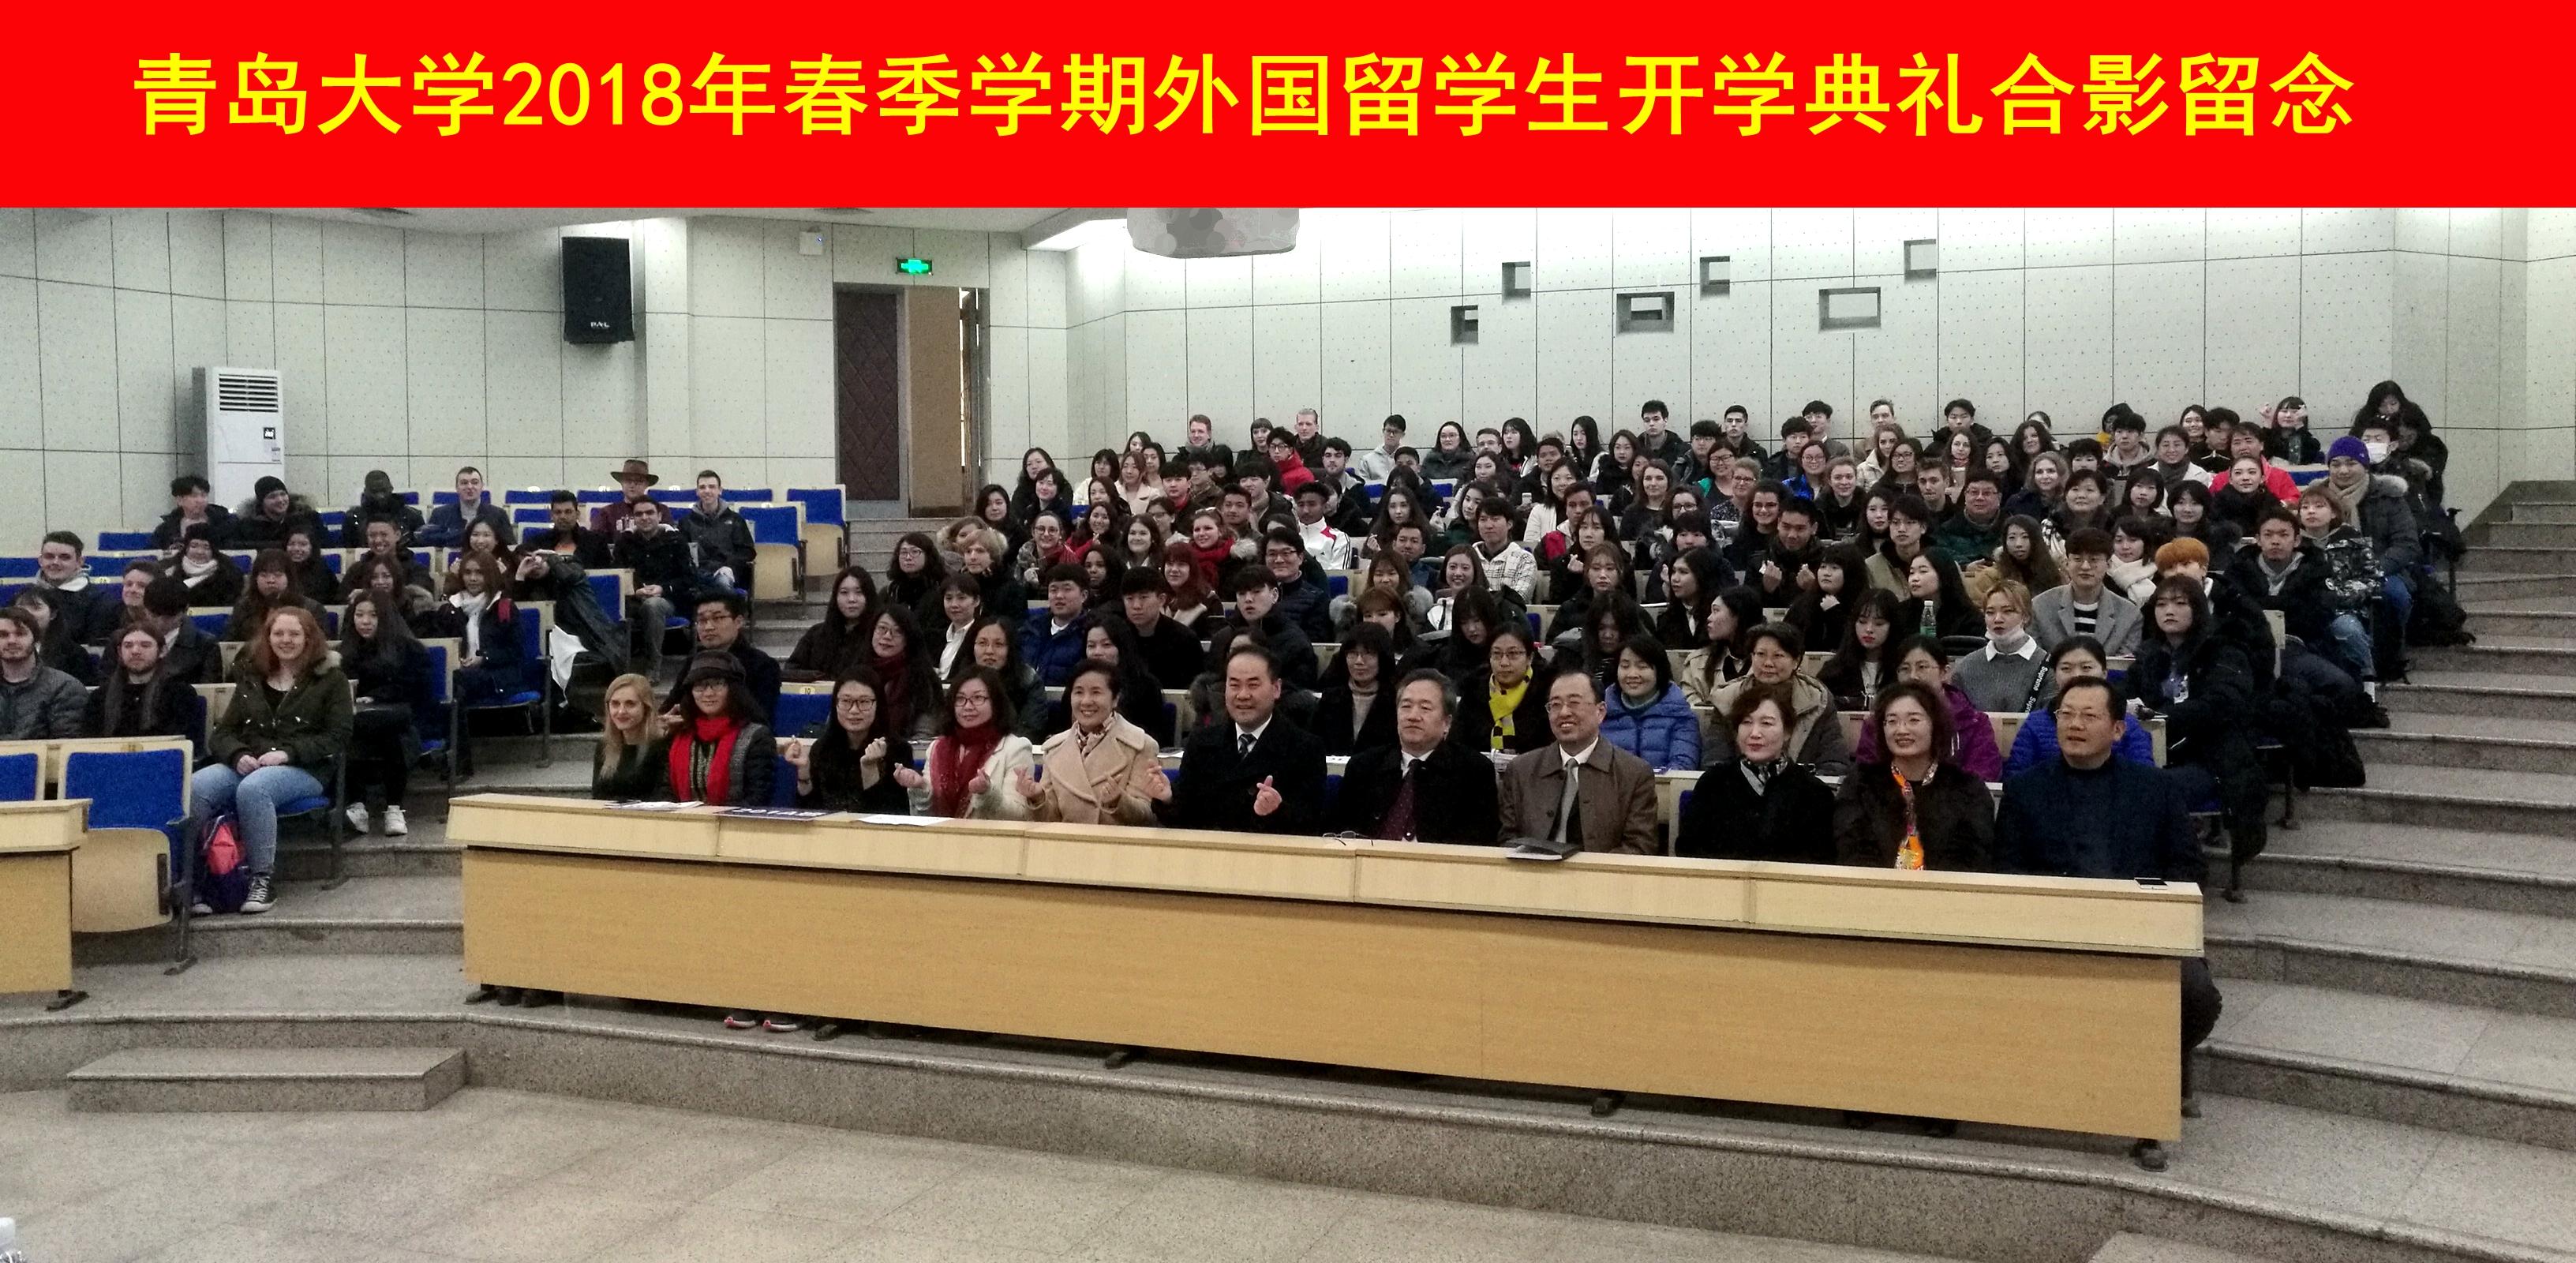 青岛大学举行2018年春季学期外国留学生开学典礼